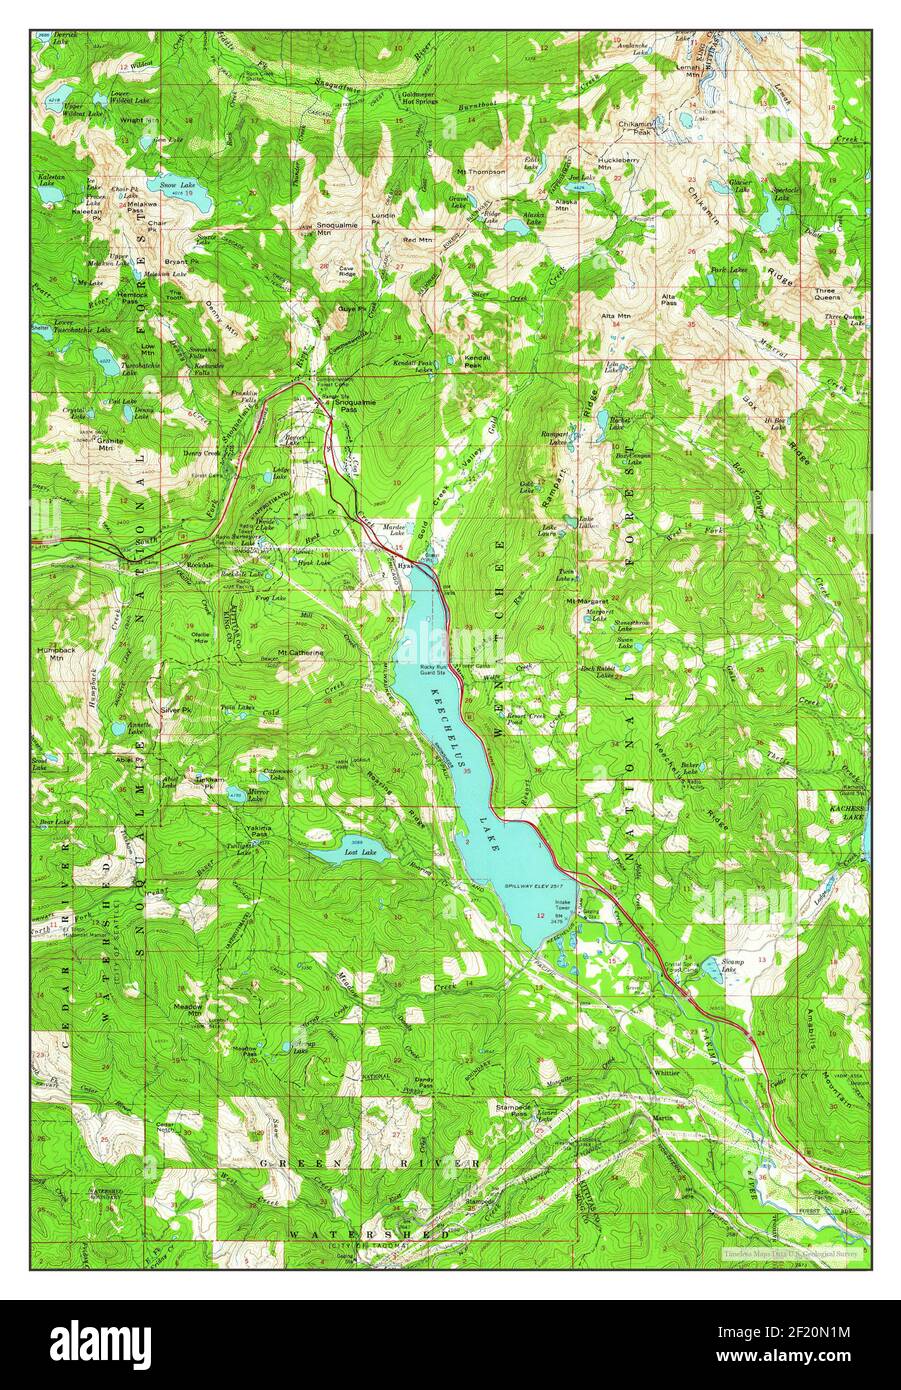 Snoqualmie Pass, Washington, carte 1961, 1:62500, Etats-Unis d'Amérique par Timeless Maps, données U.S. Geological Survey Banque D'Images